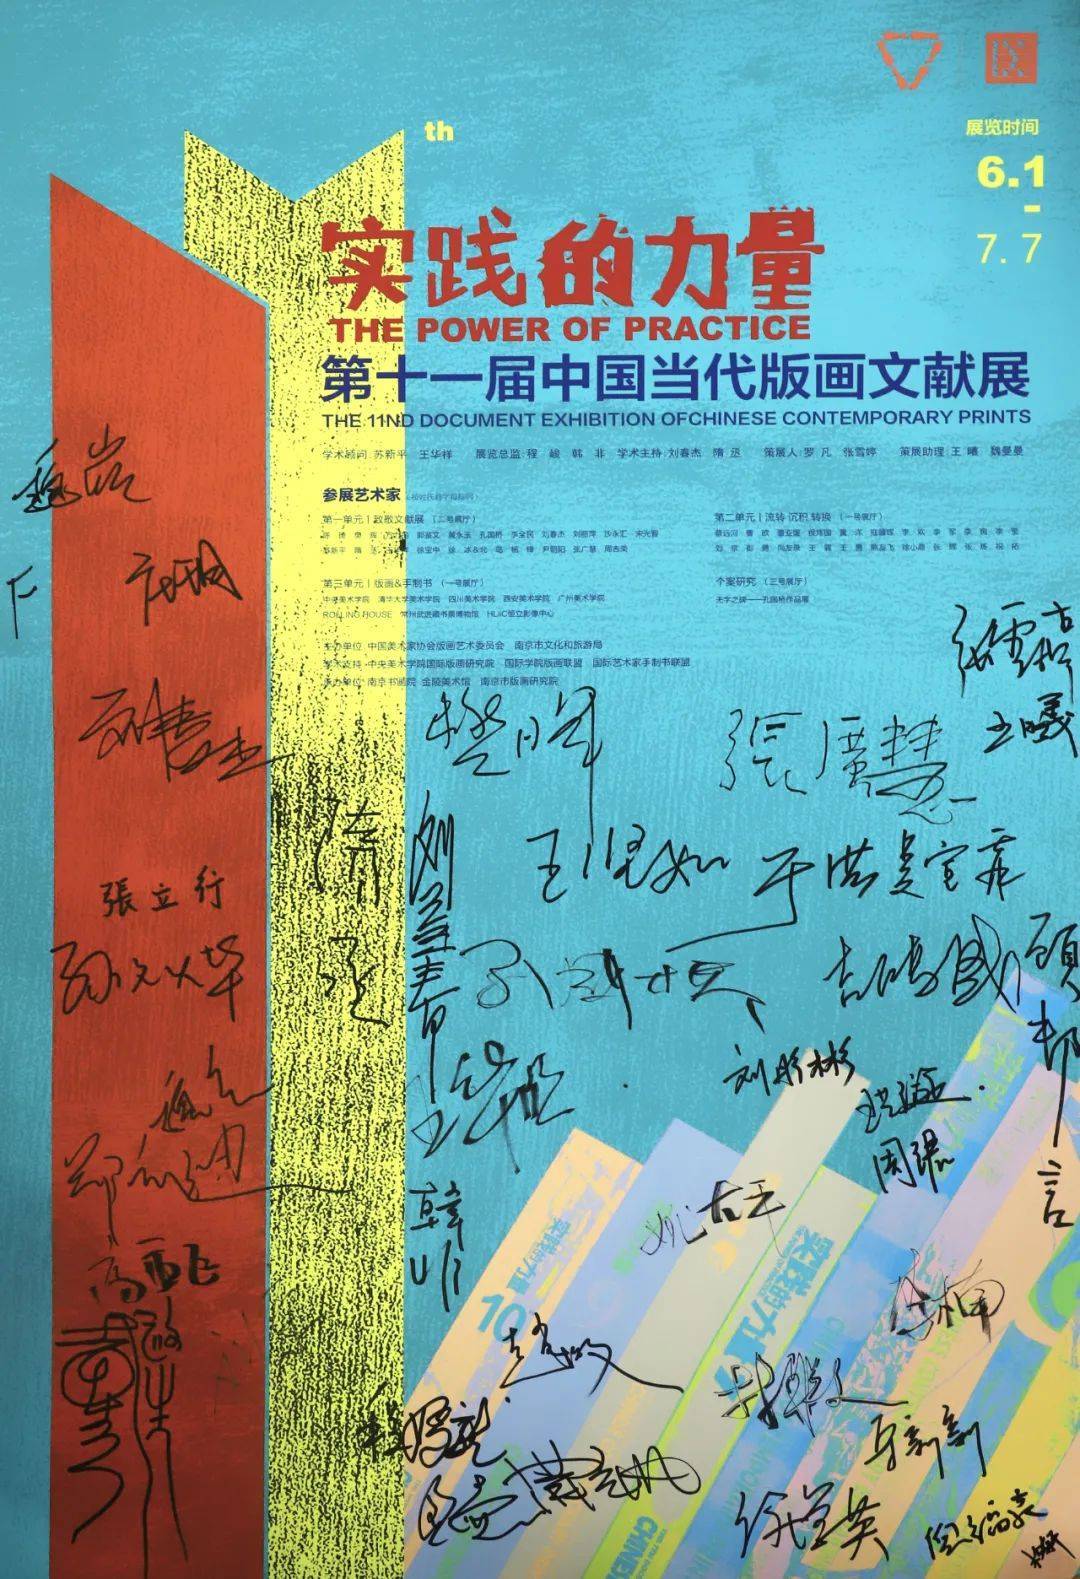 见证“实践的力量”，中国当代版画文献展走过17年                